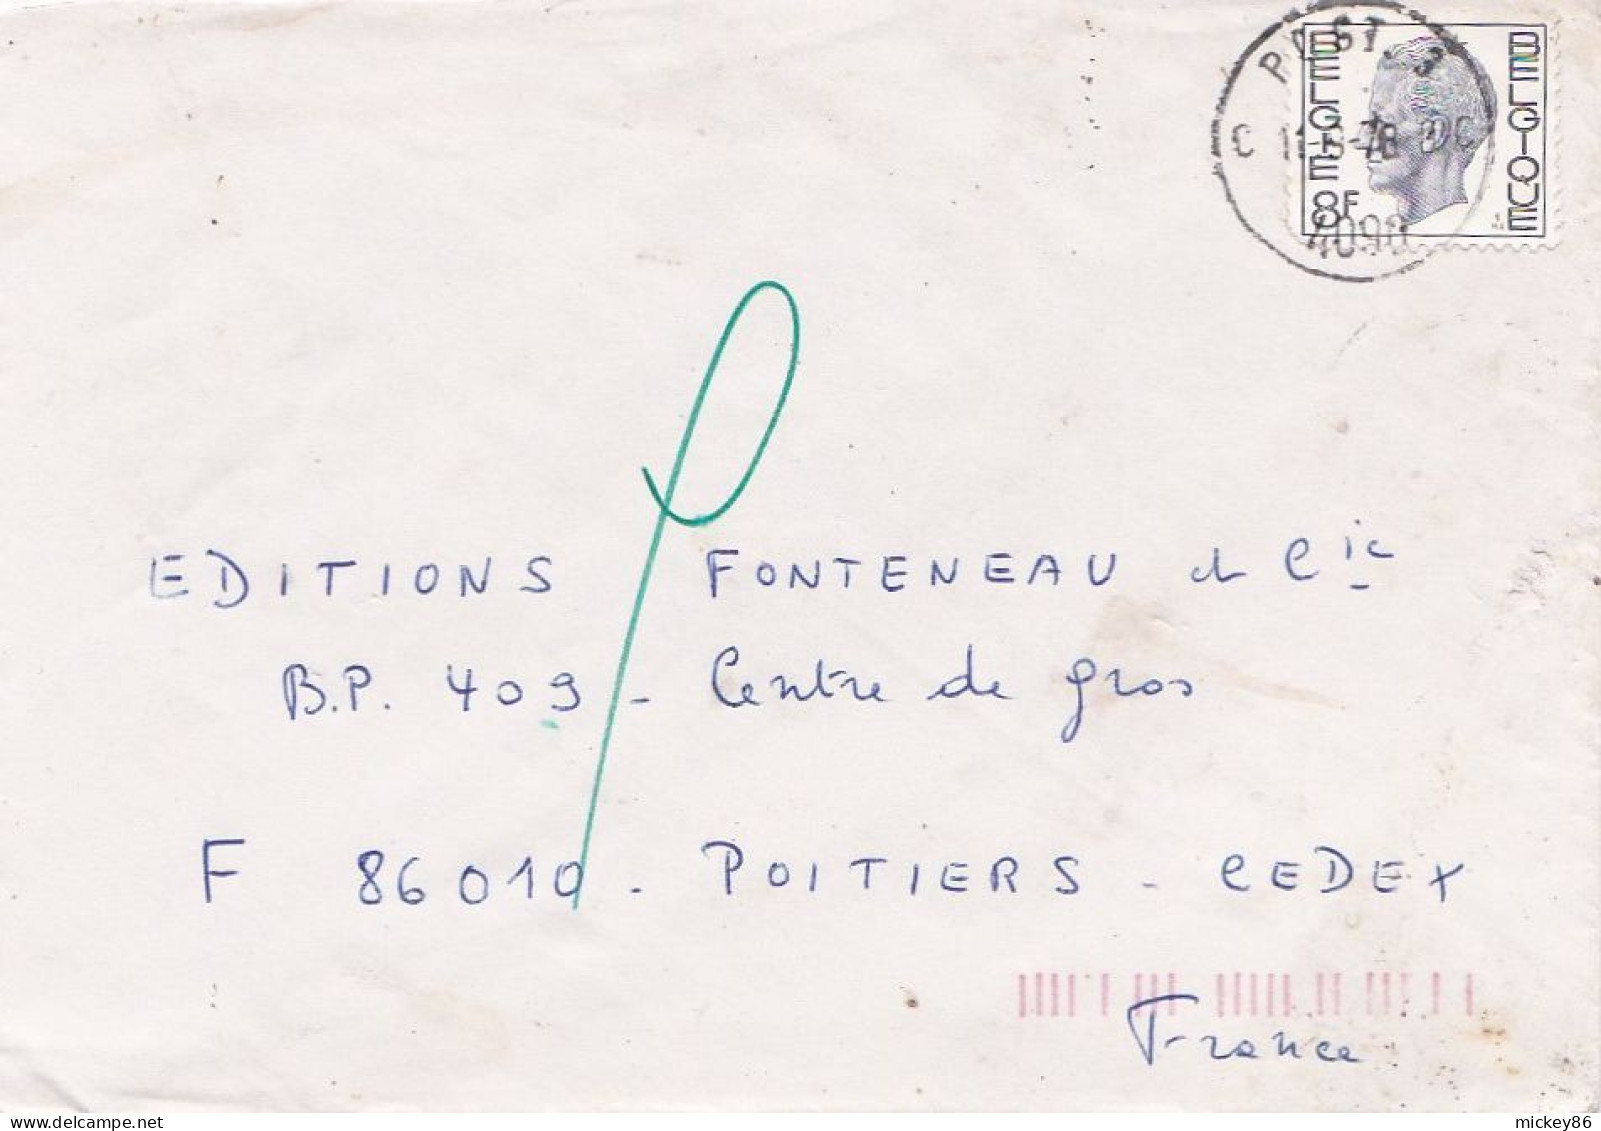 Belgique --1978--Lettre De POST 3  4090  Pour POITIERS (France)..timbre Seul Sur Lettre + Cachet  11-9-78 - Briefe U. Dokumente